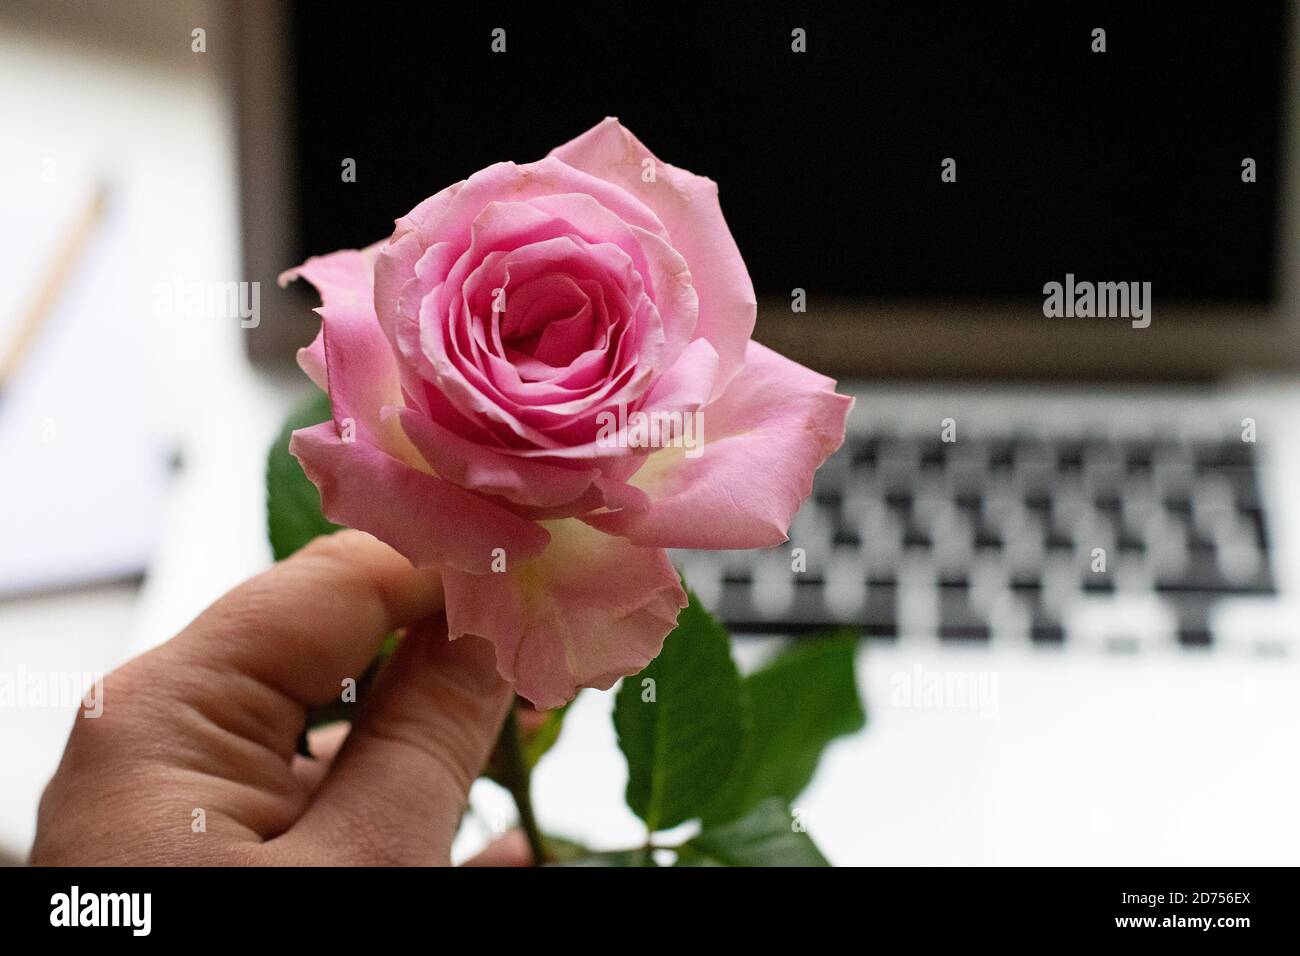 Main tenant une rose rose. En arrière-plan se trouve un ordinateur portable. Concept de rencontres en ligne, romance de bureau ou relation longue distance Banque D'Images